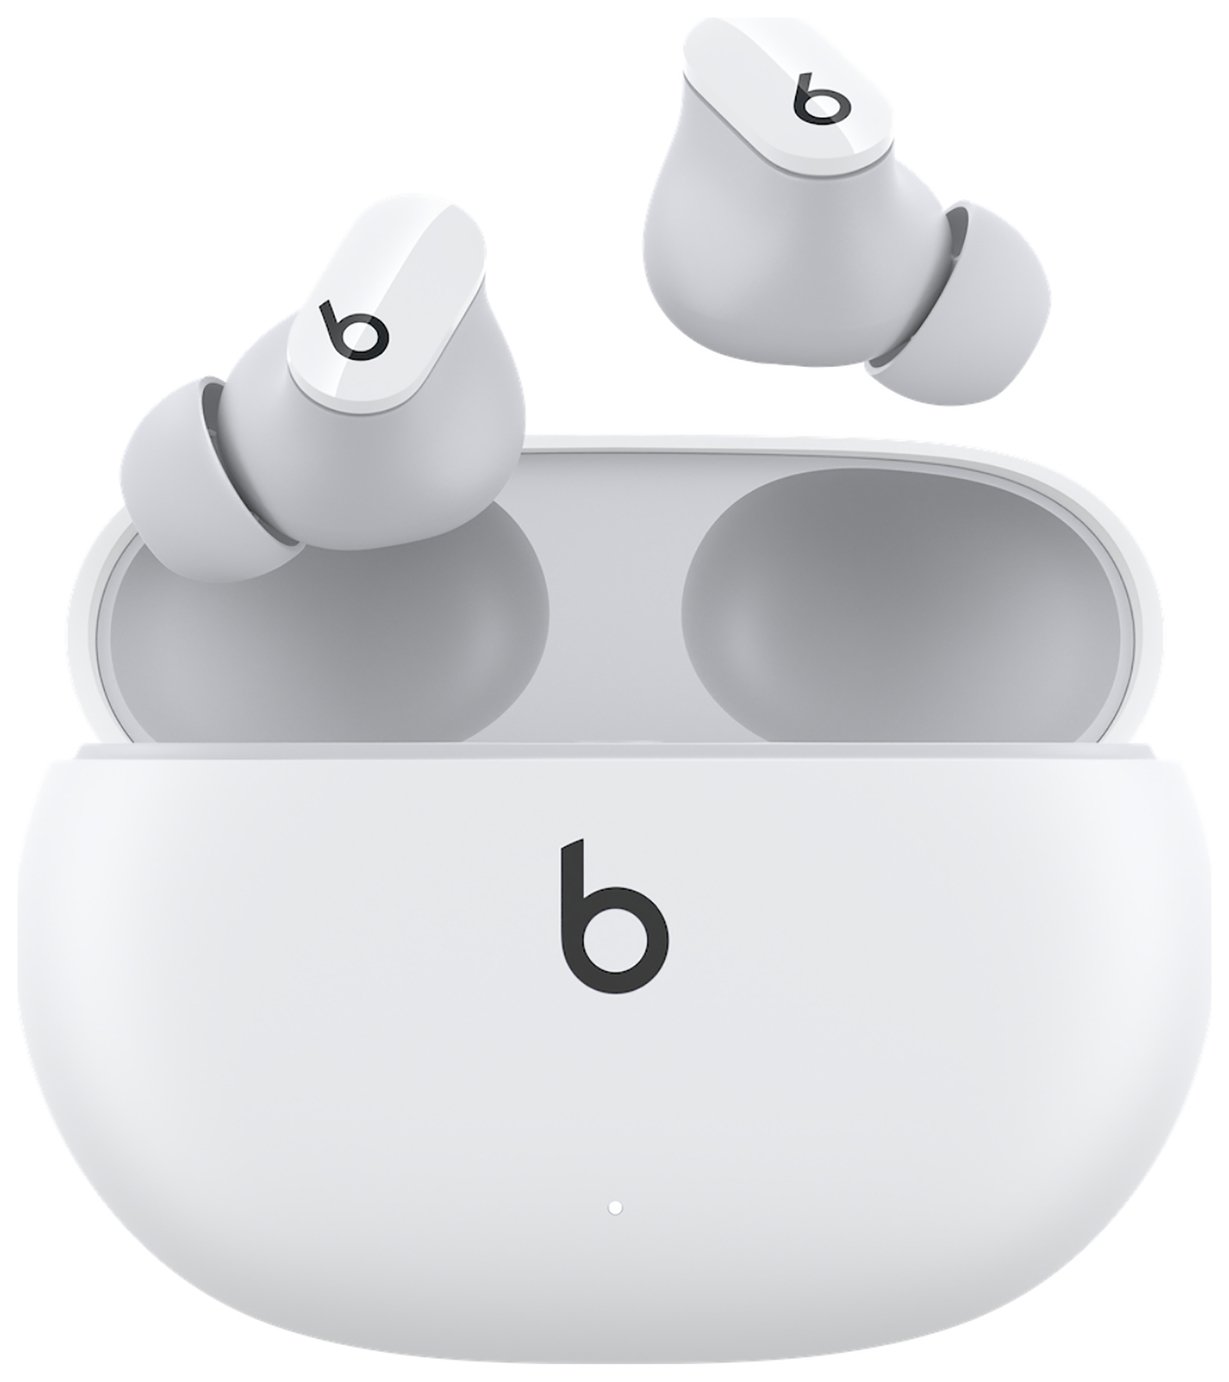 Beats Studio Buds ANC In-Ear True Wireless Earbuds - White